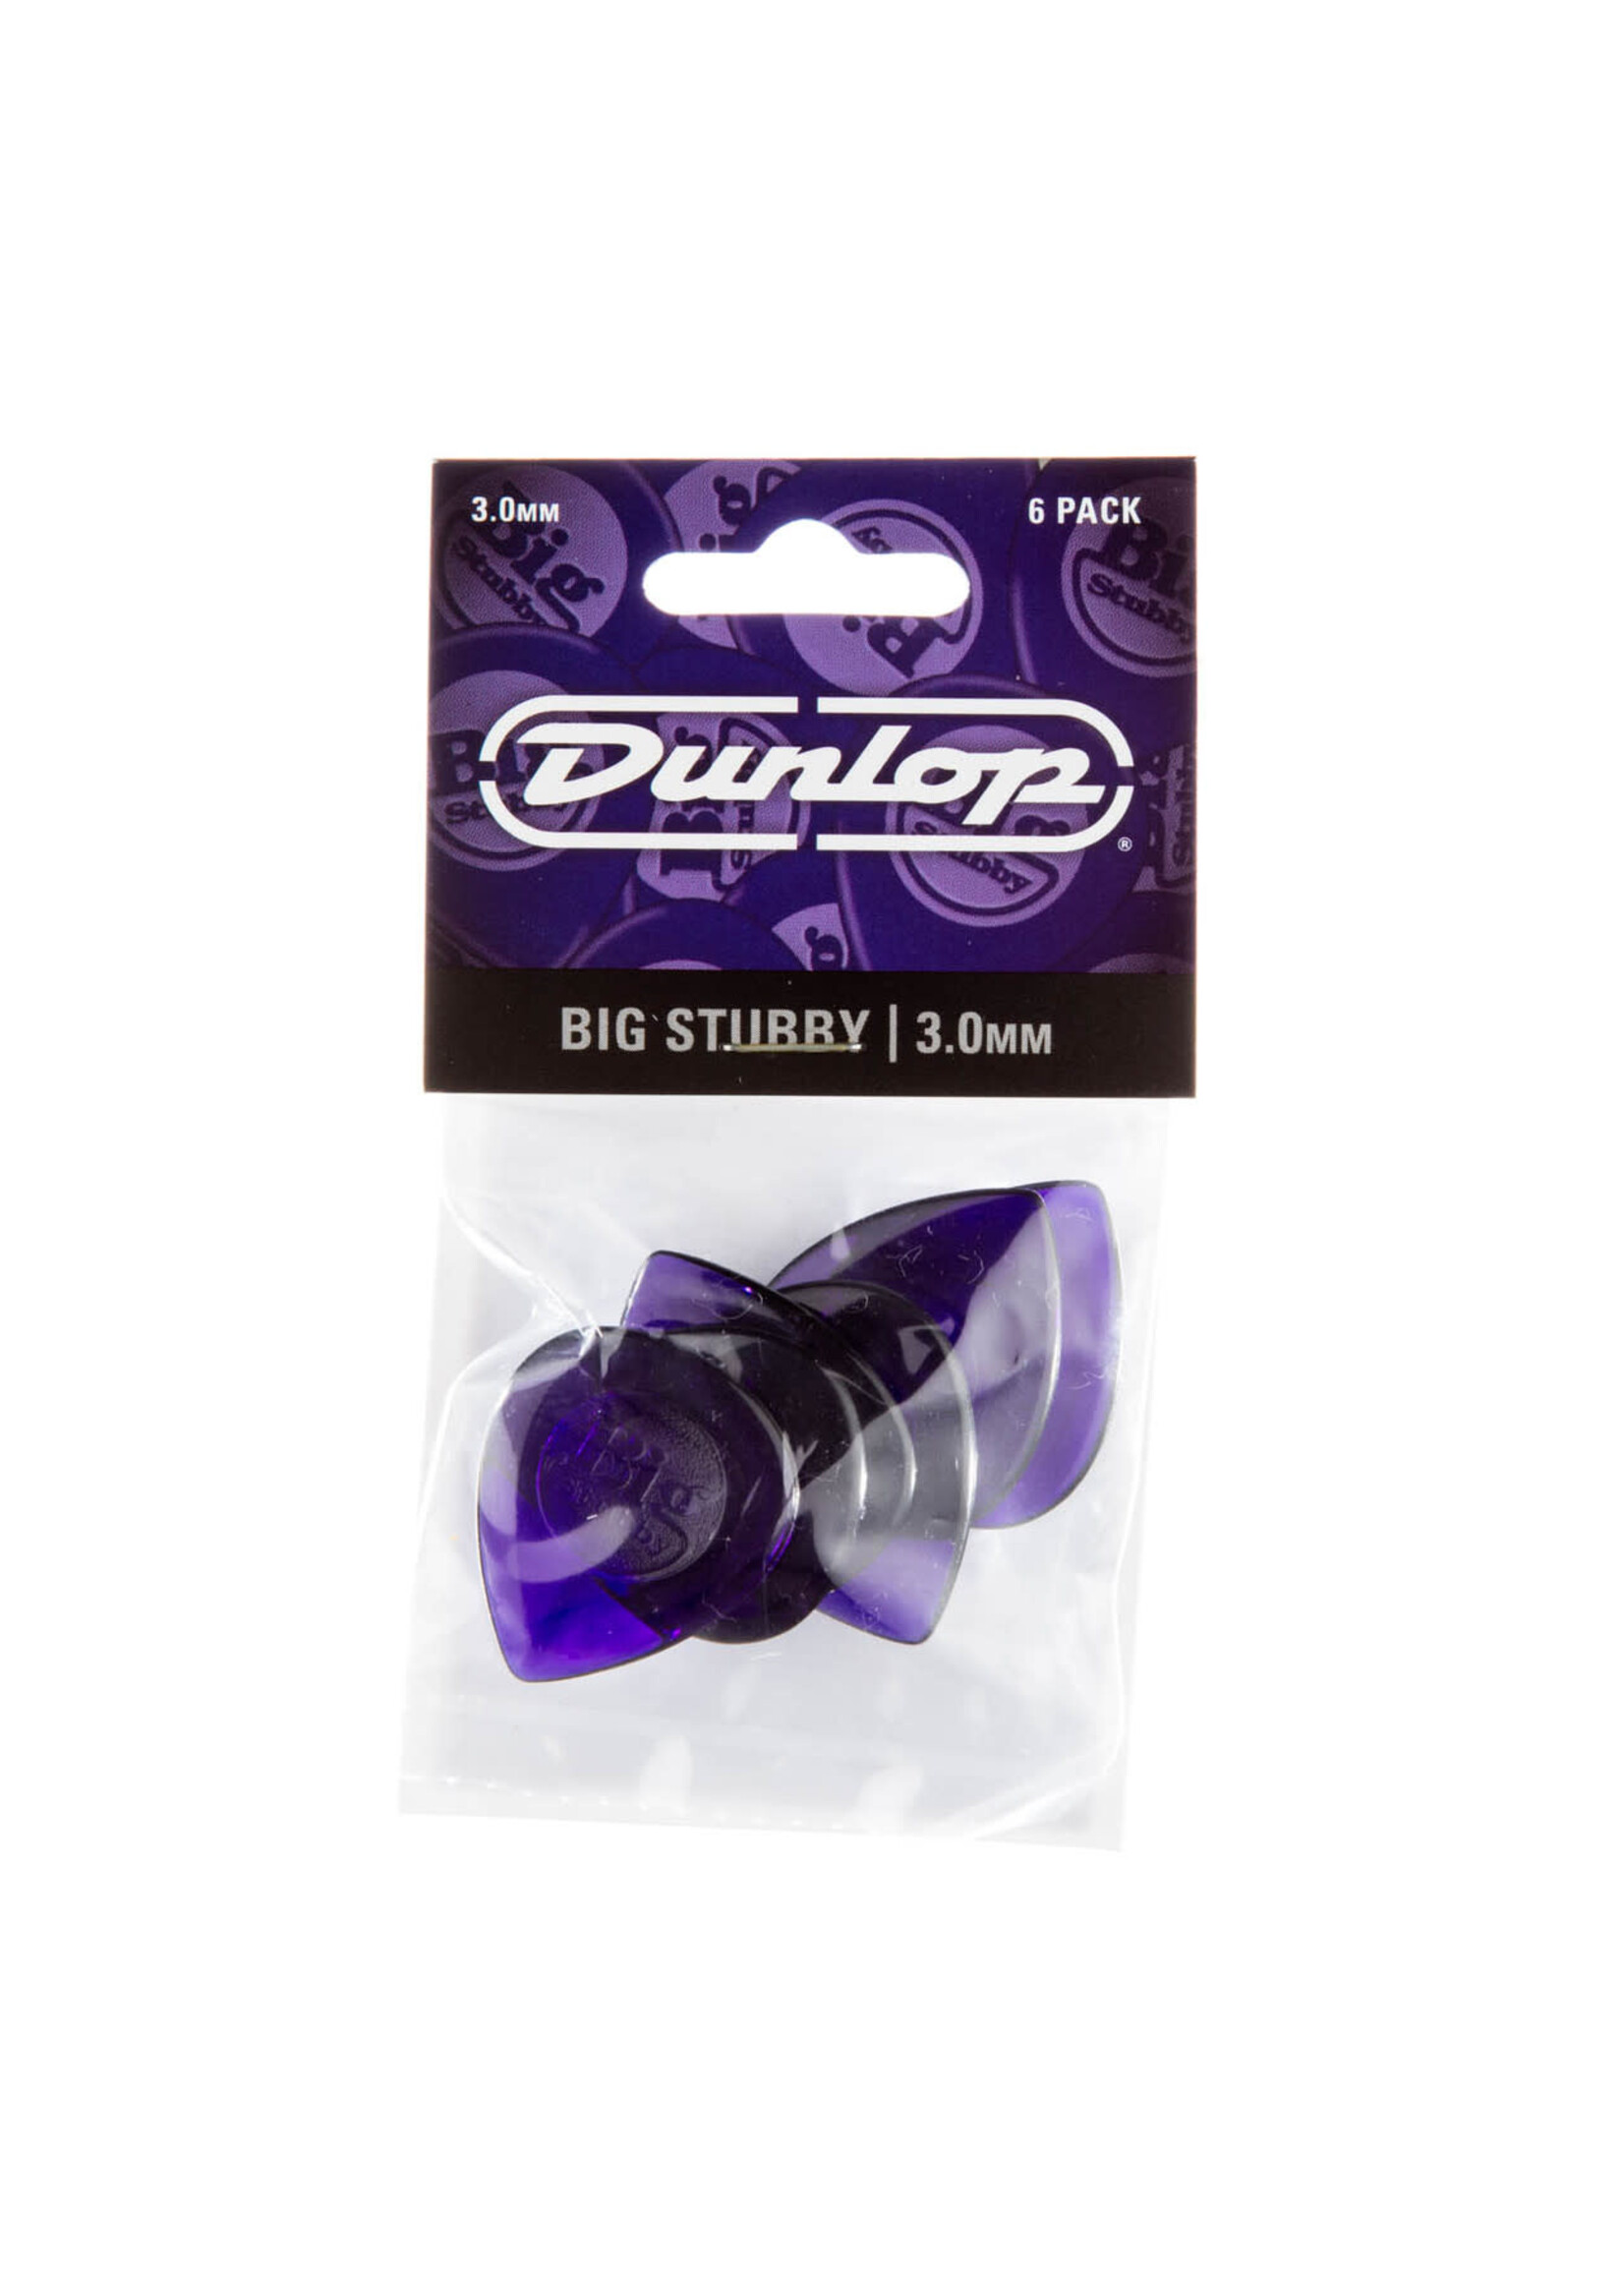 Dunlop Dunlop 475P3.0 Big Stubby 6-Pack